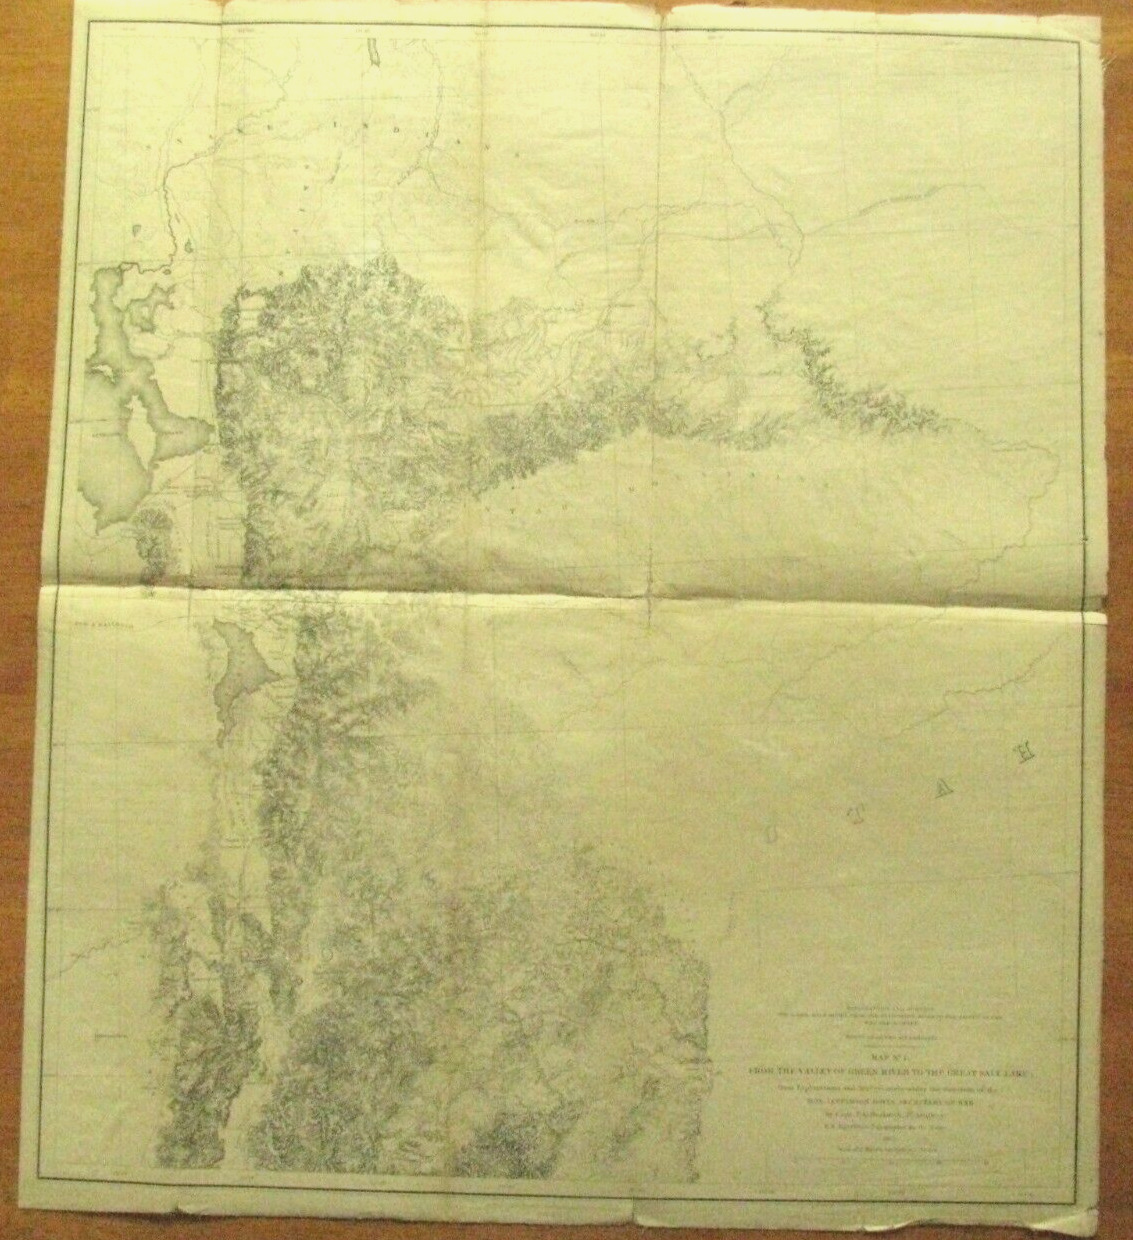 OGDEN UTAH MAP 1854 US PACIFIC RAILROAD SURVEY MAP ON LINEN